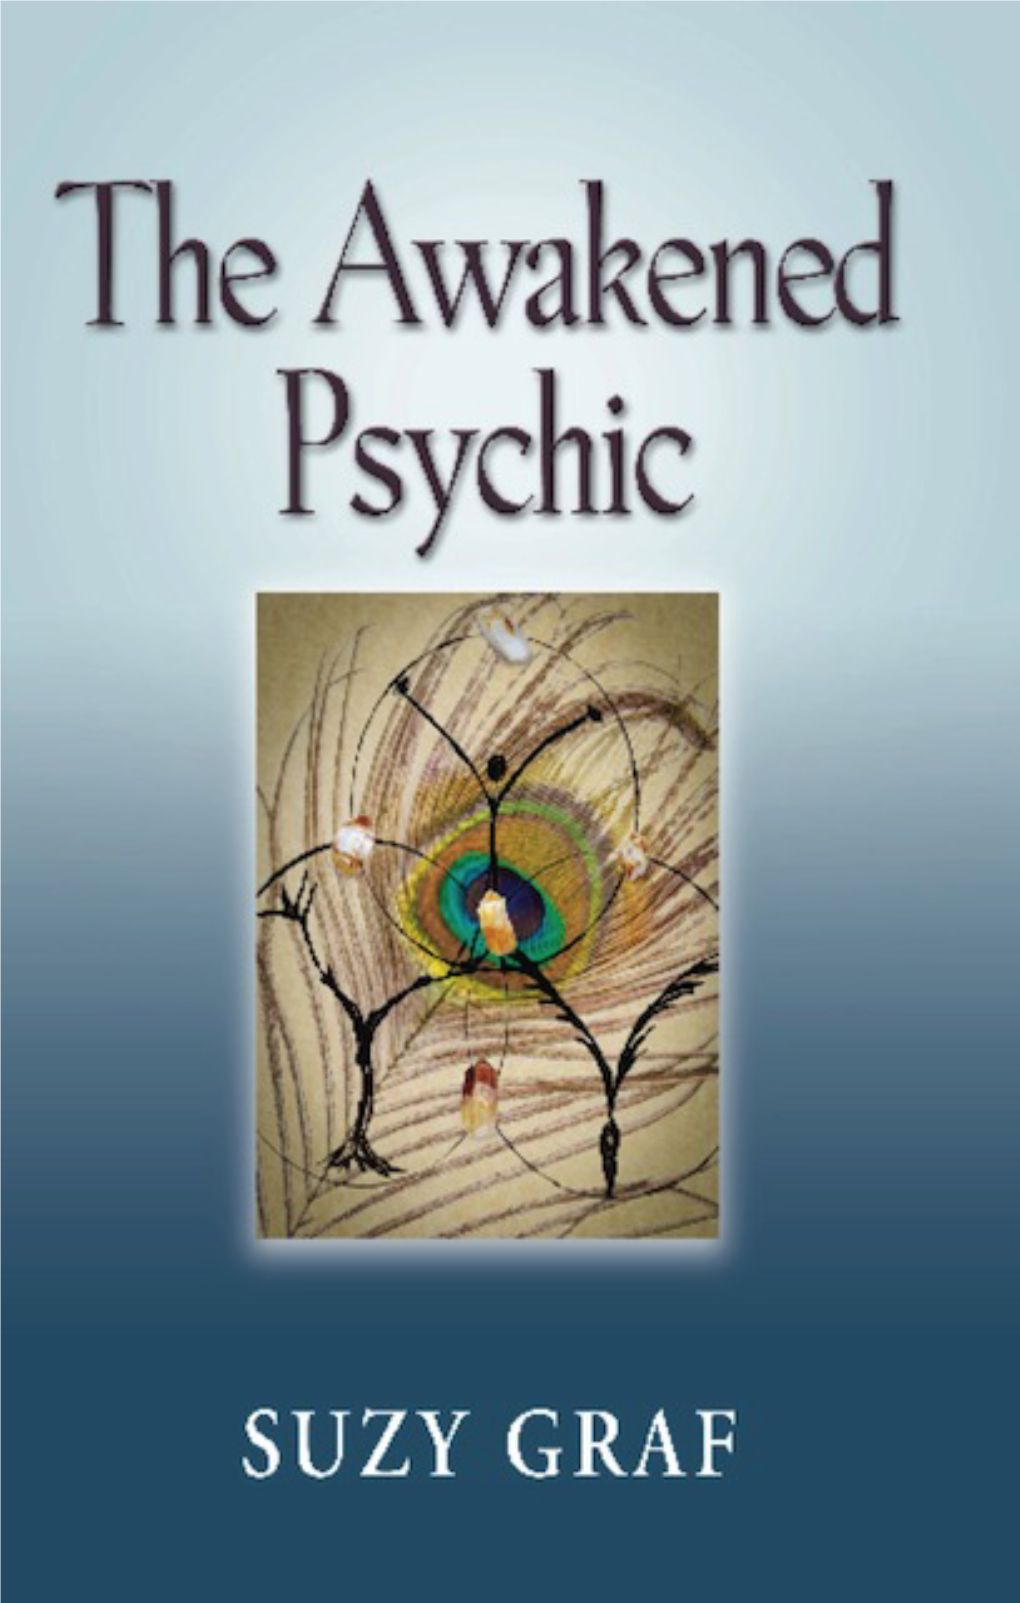 The Awakened Psychic: Using Crystal Grids, Reiki & Spirit Guides to Develop Animal Communication, Mediumship & Self Healing